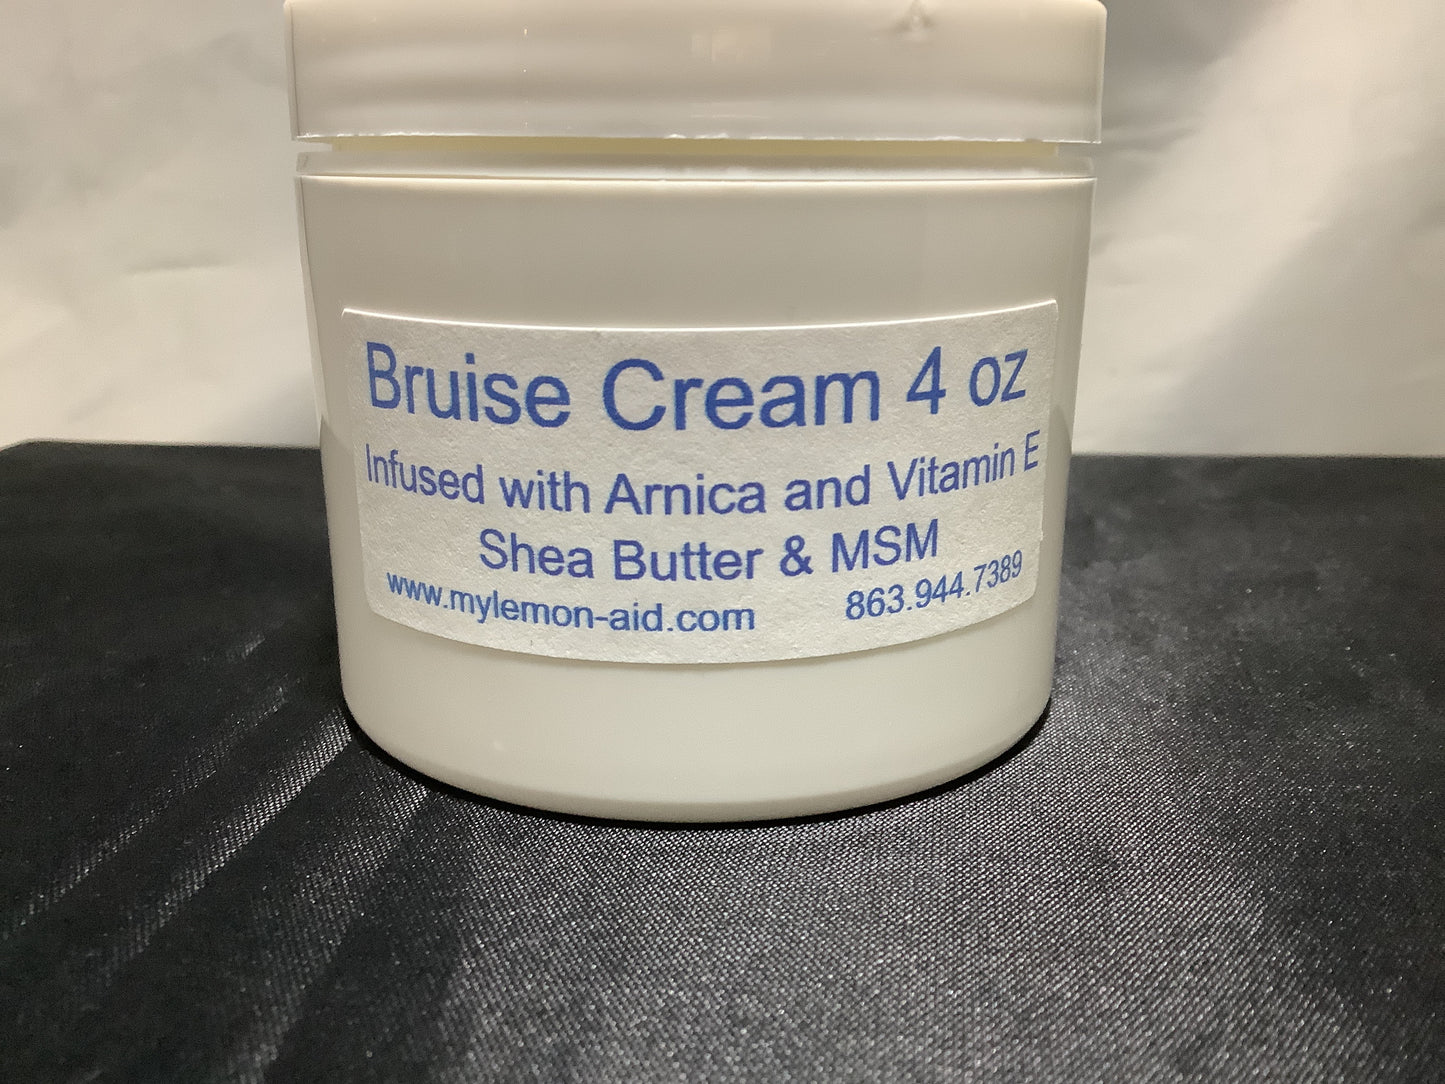 Bruise Cream 4 oz